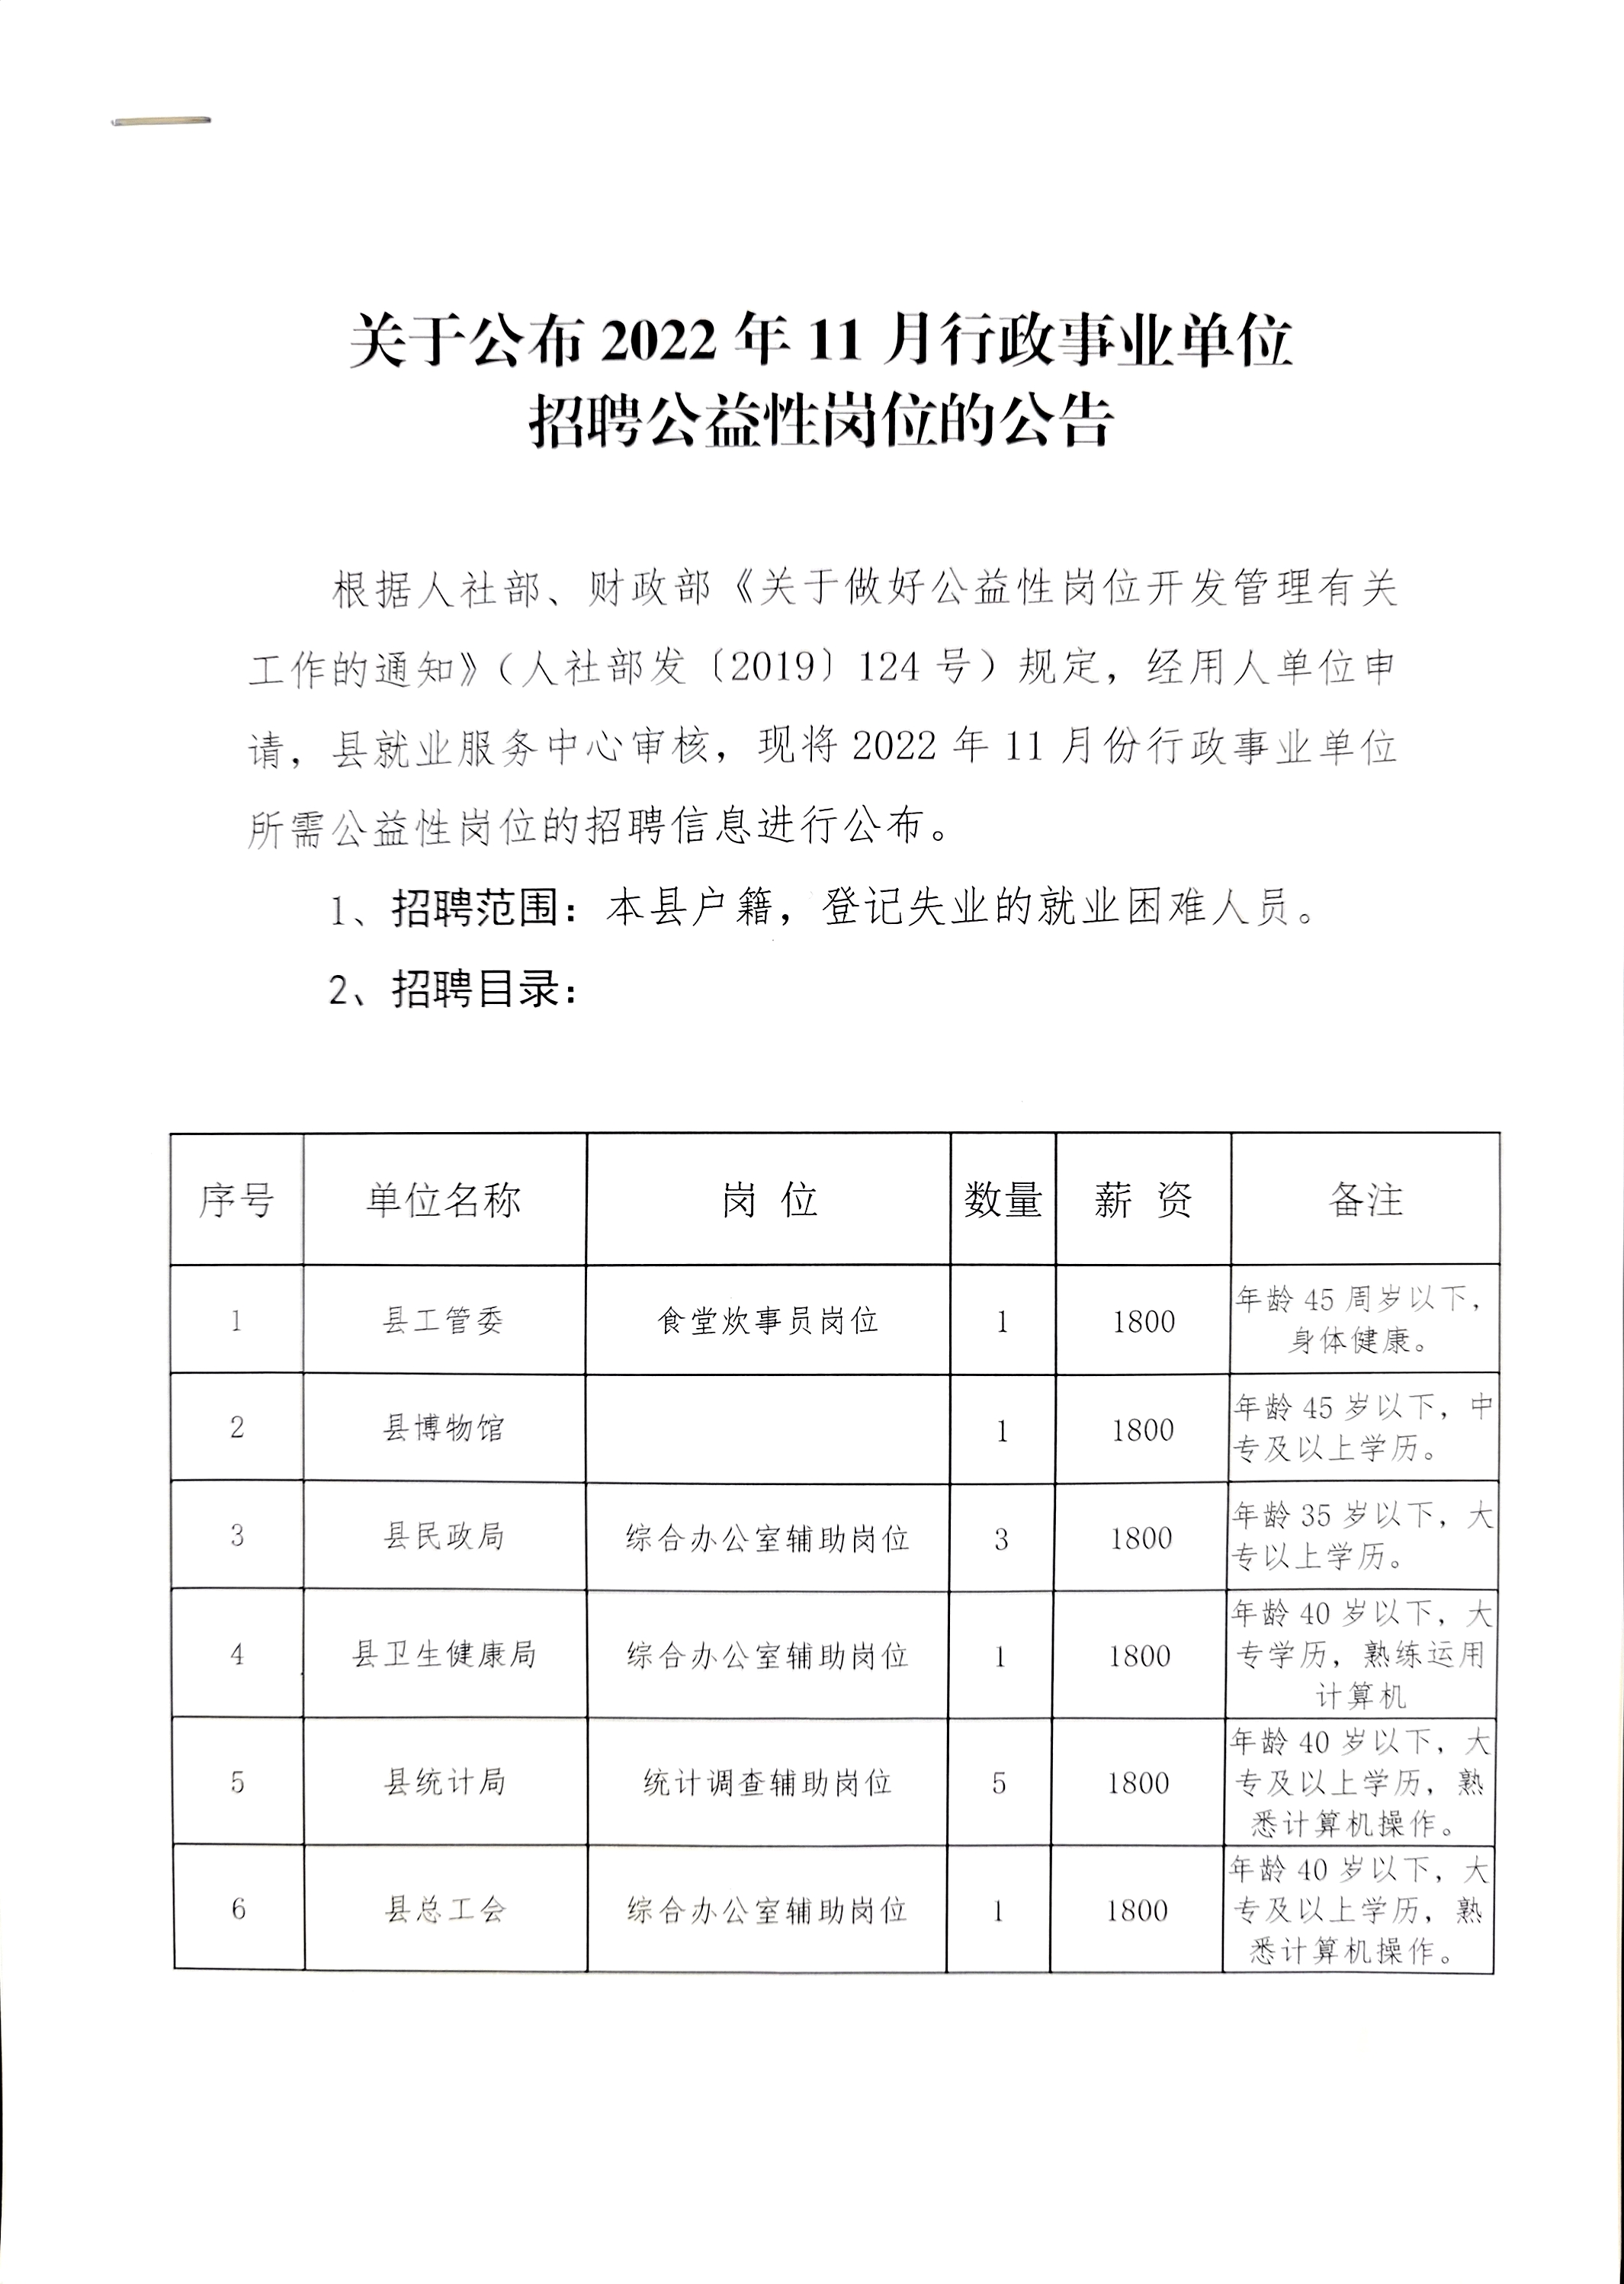 2022年甘肃酒泉阿克塞县行政事业单位招聘公益岗44人公告